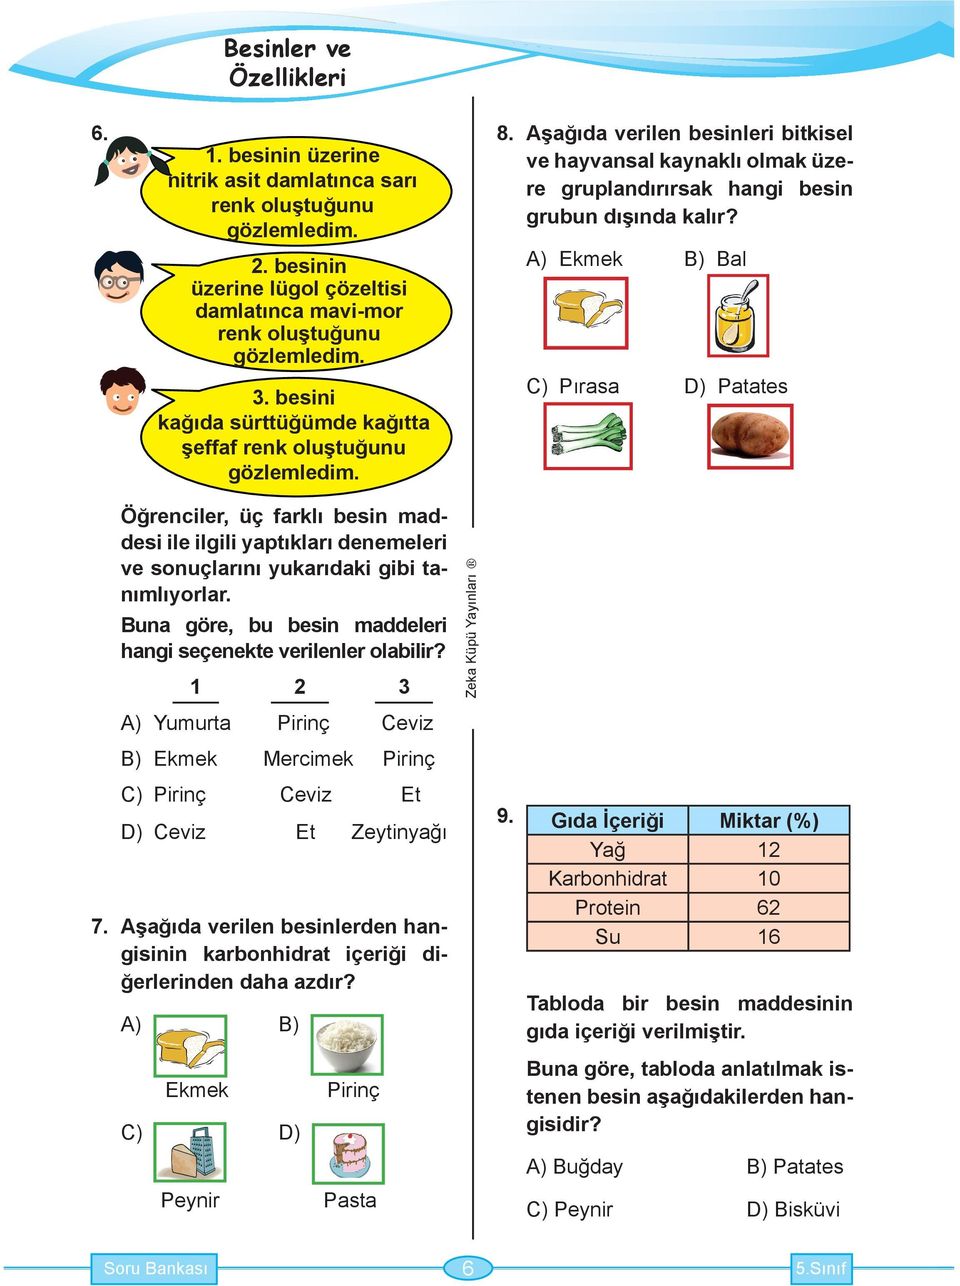 Ekmek B) Bal C) Pırasa D) Patates Öğrenciler, üç farklı besin maddesi ile ilgili yaptıkları denemeleri ve sonuçlarını yukarıdaki gibi tanımlıyorlar.